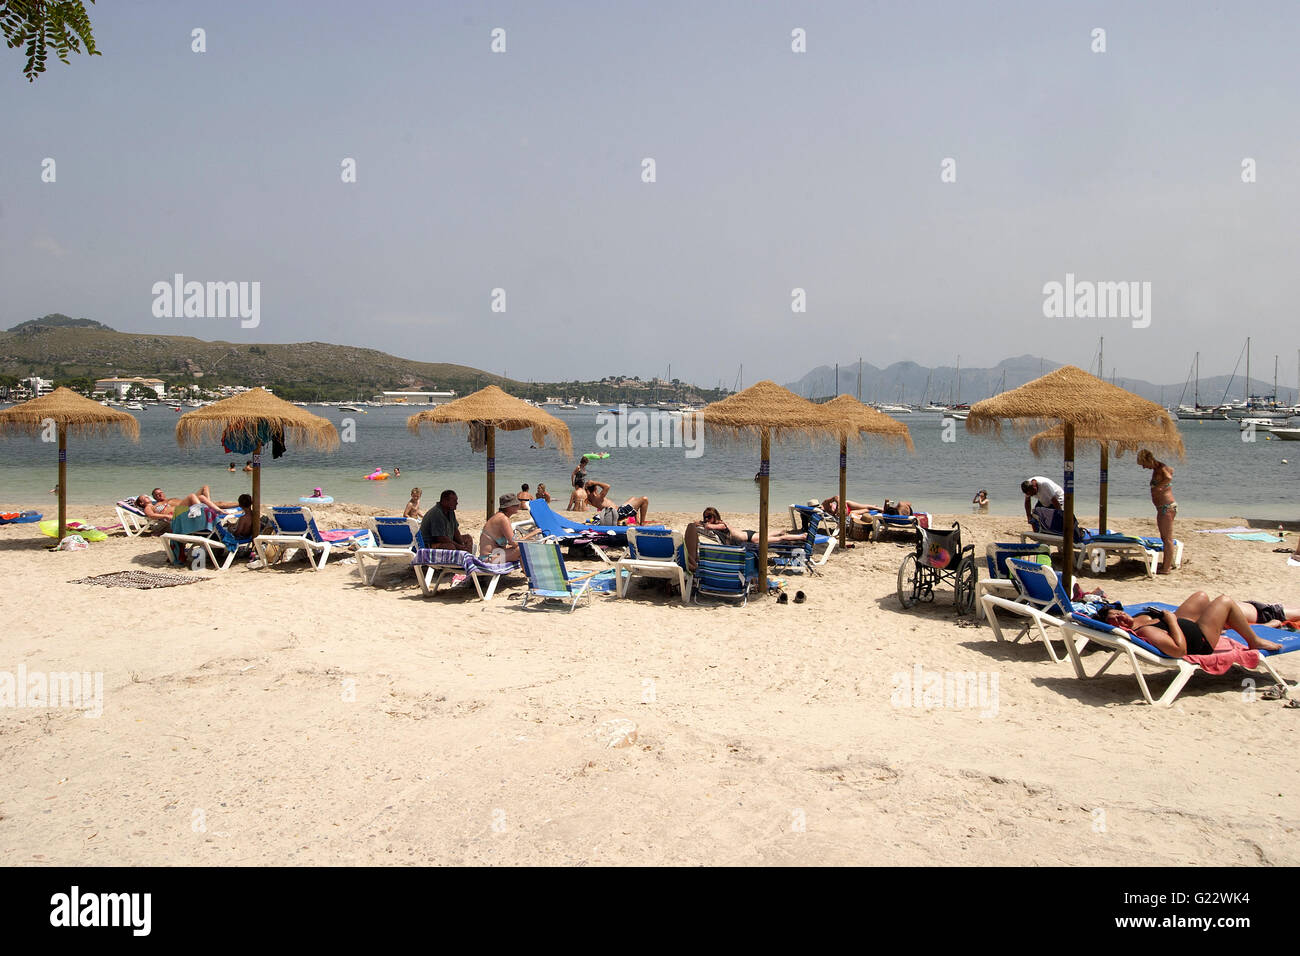 Una bella imagen de turistas tomando el sol en la playa en la soleada de Palma de Mallorca, España, playa, turismo, vacaciones, verano Foto de stock